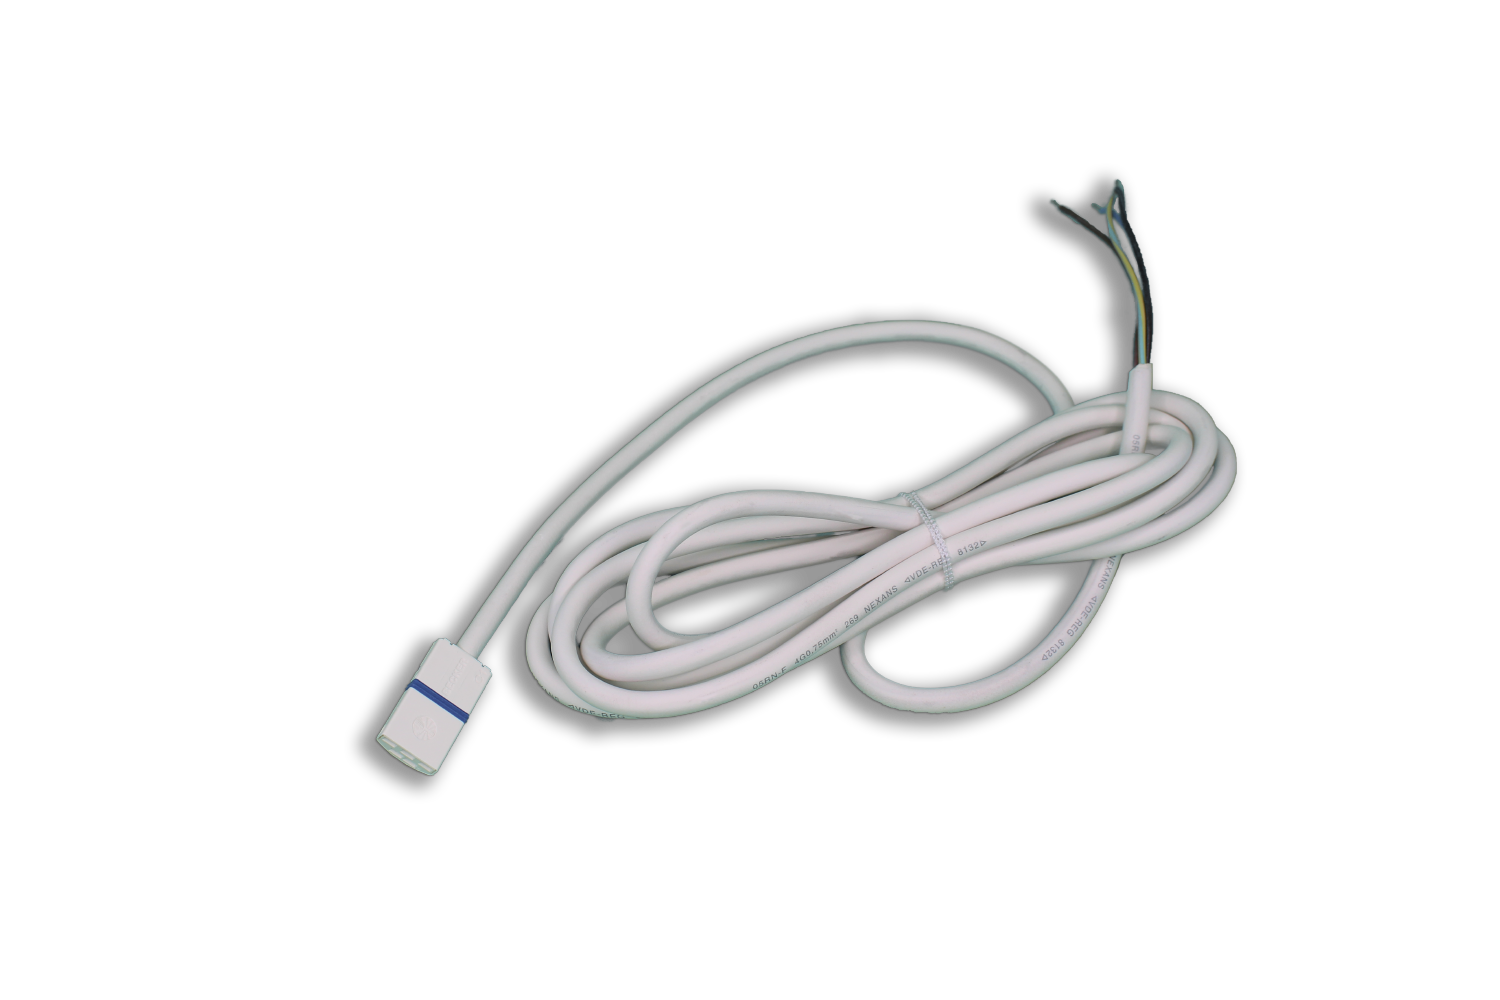 C-Plug Steckbare BECKER-Anschlussleitung Mit Aderendhülsen 1,0m weiß 